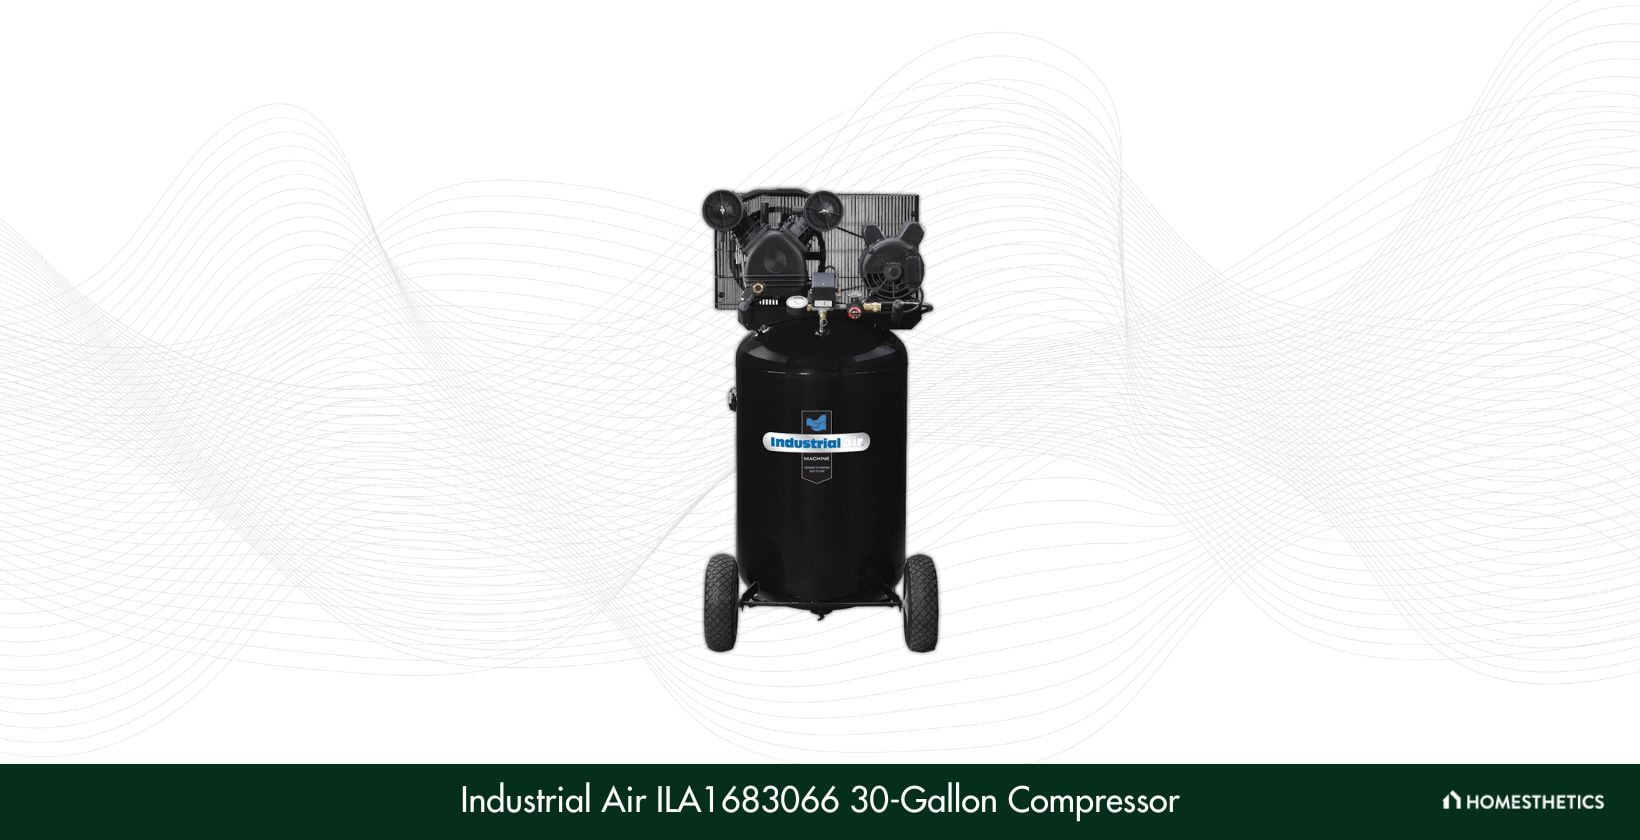 Industrial Air ILA1683066 30 Gallon Compressor